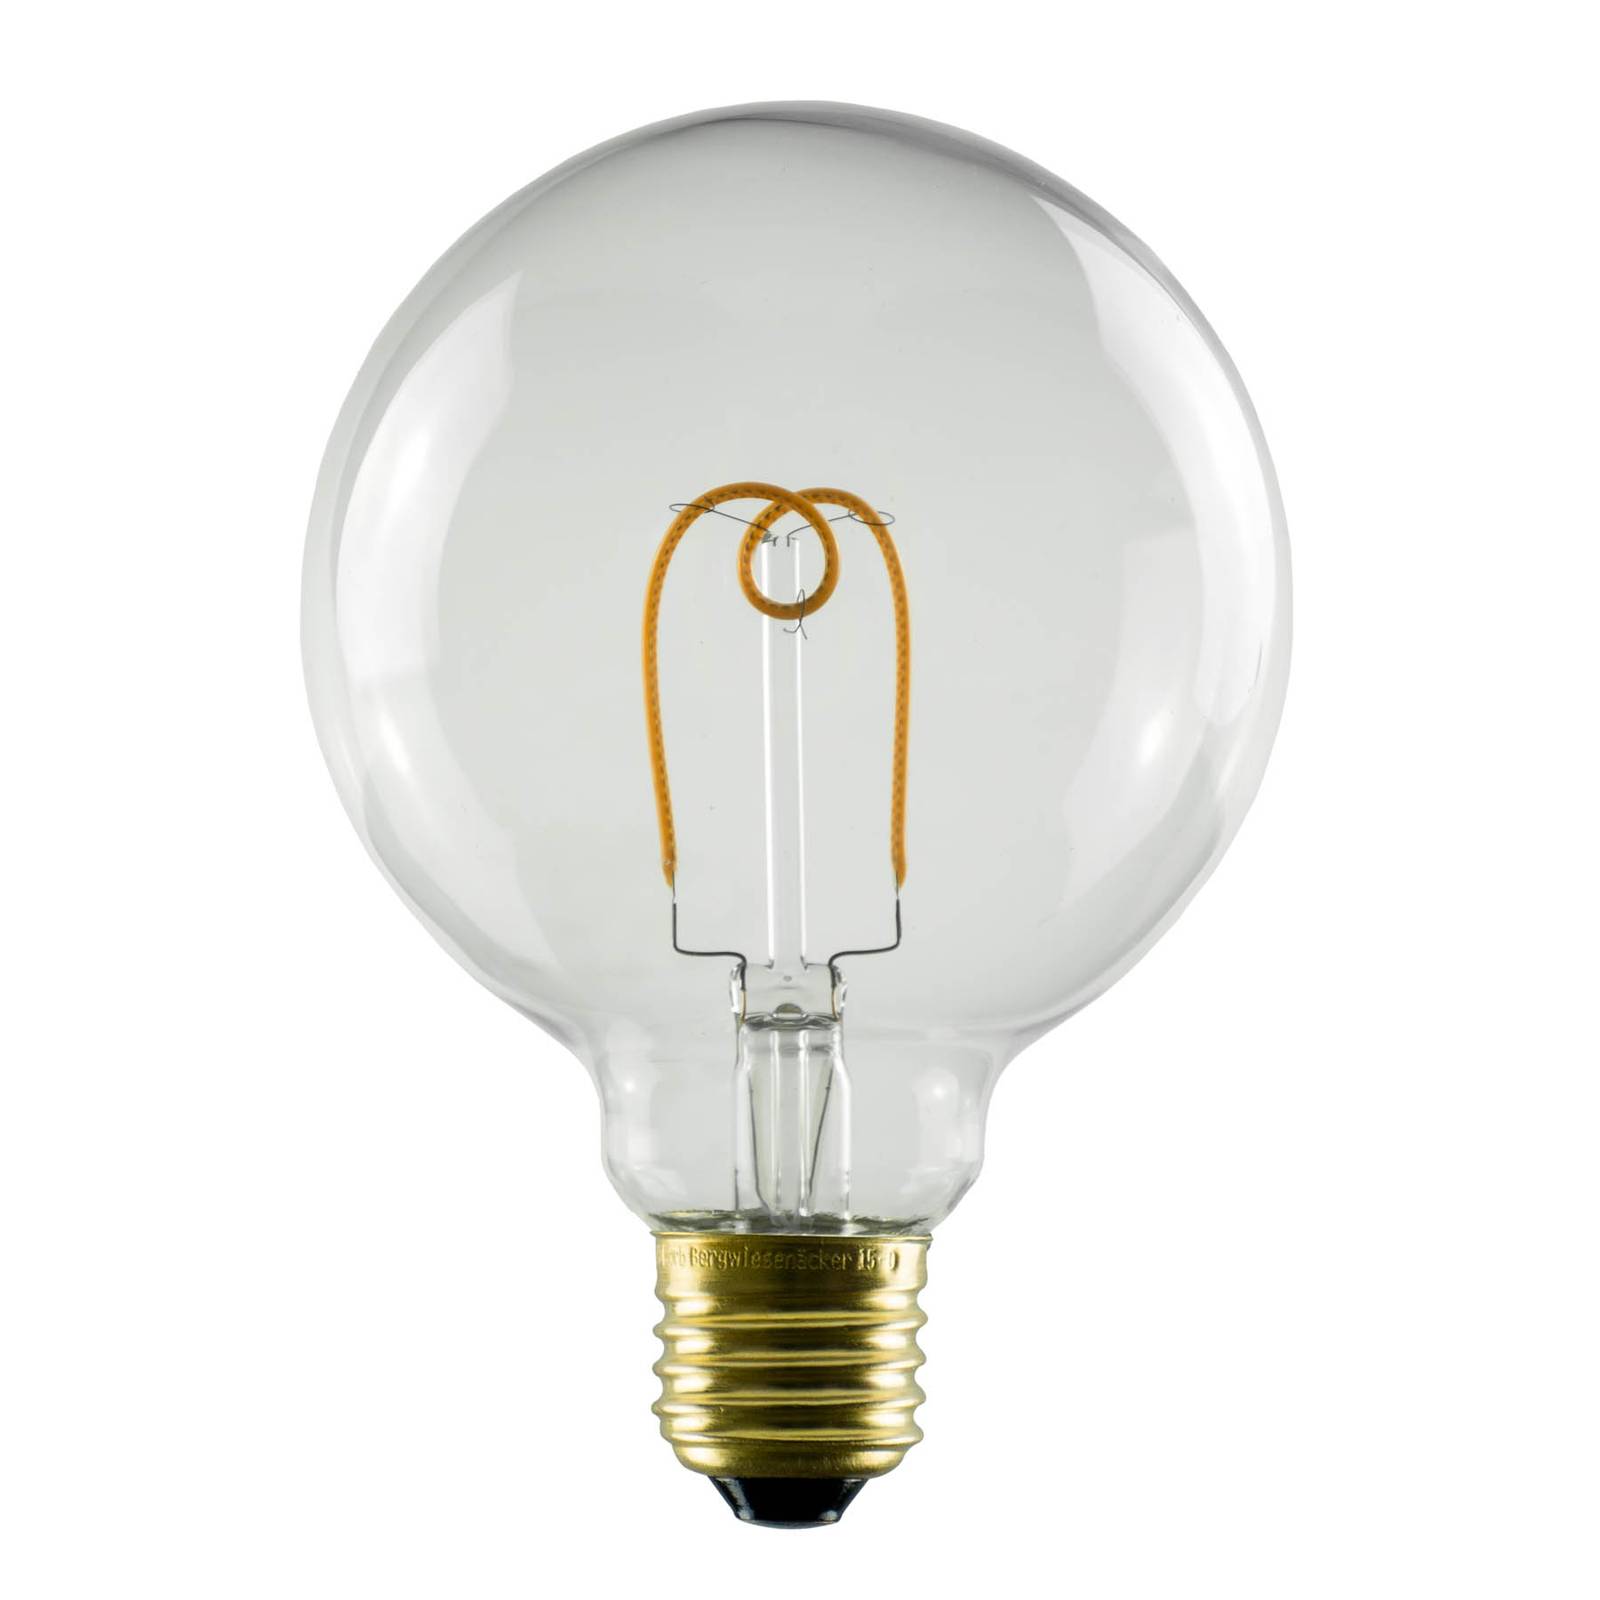 SEGULA LED-Globelampe E27 3,2W G95 922 dimmbar von Segula